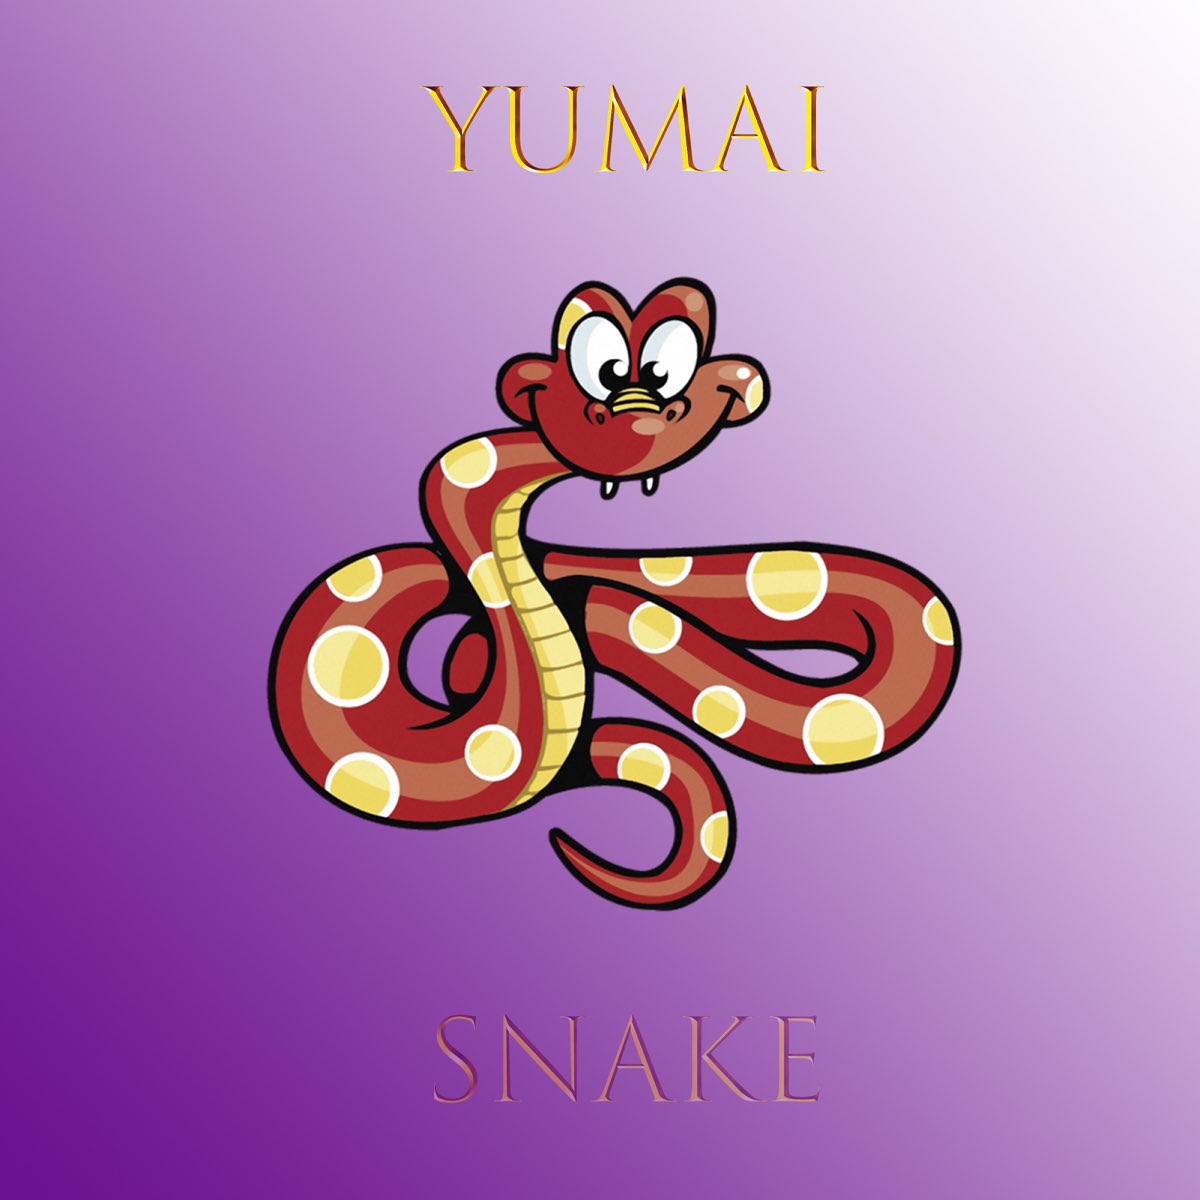 Snake's music. Yumai.